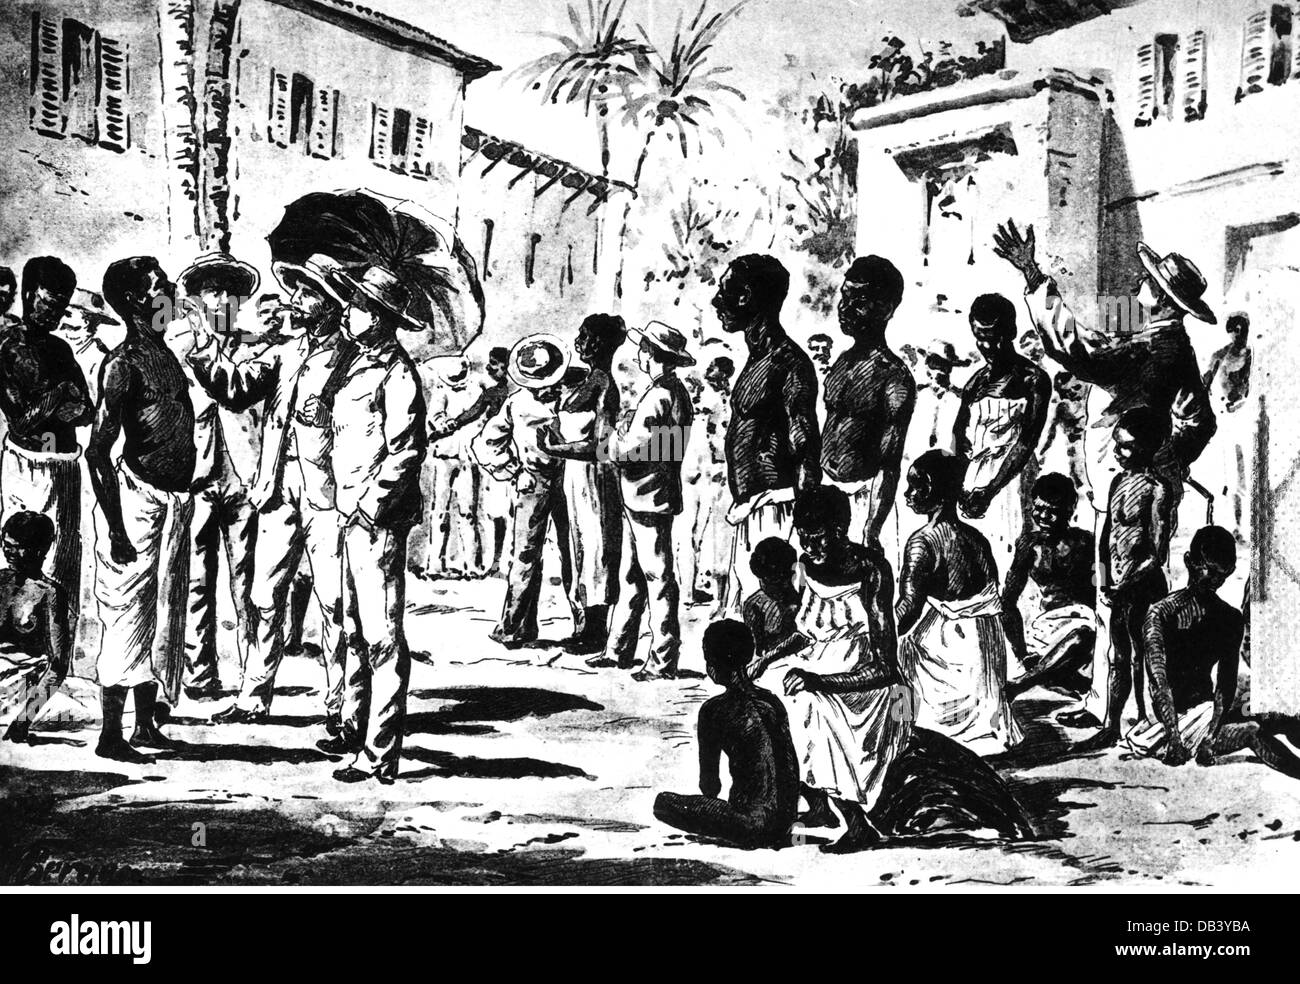 Esclavage, commerce des esclaves, marché des esclaves à Cuba, gravure sur bois, 1896, droits additionnels-Clearences-non disponible Banque D'Images